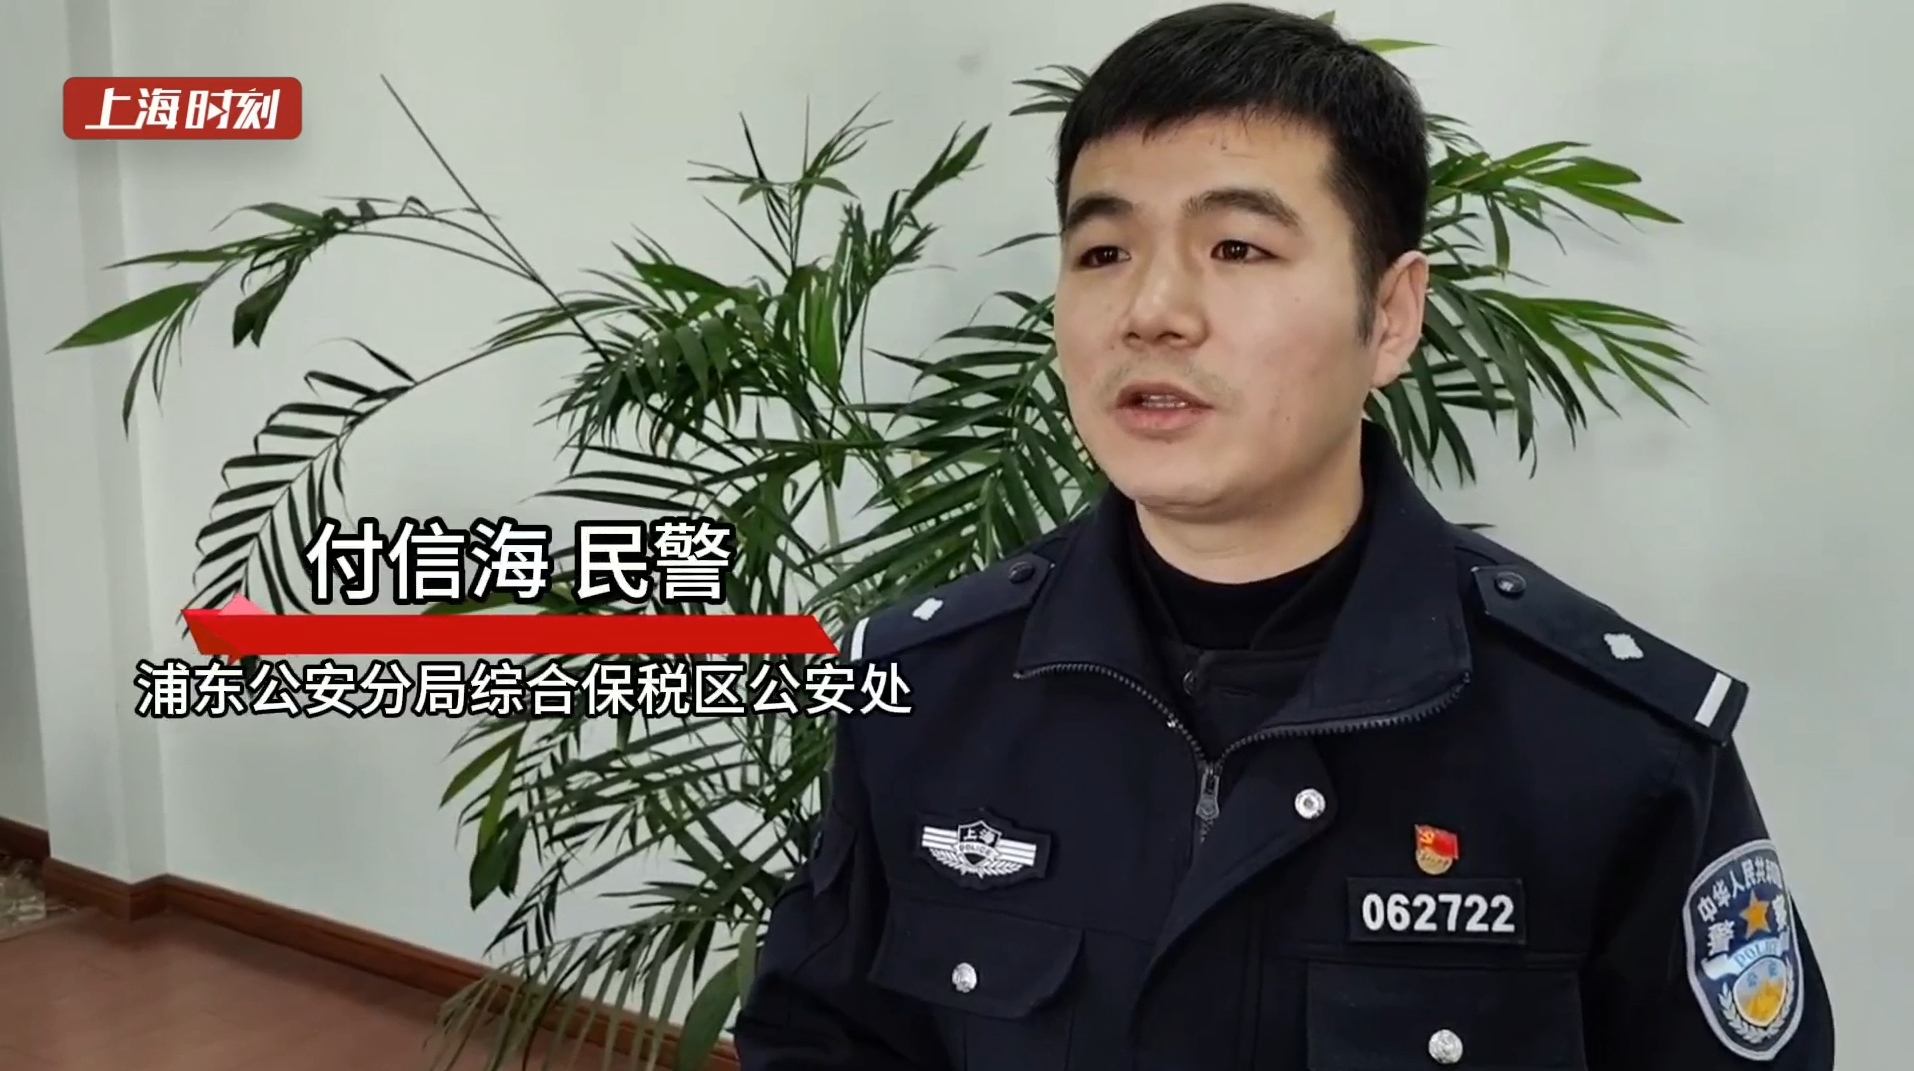 视频 | 逆向行驶撞人逃逸 上海警方循线锁定肇事人